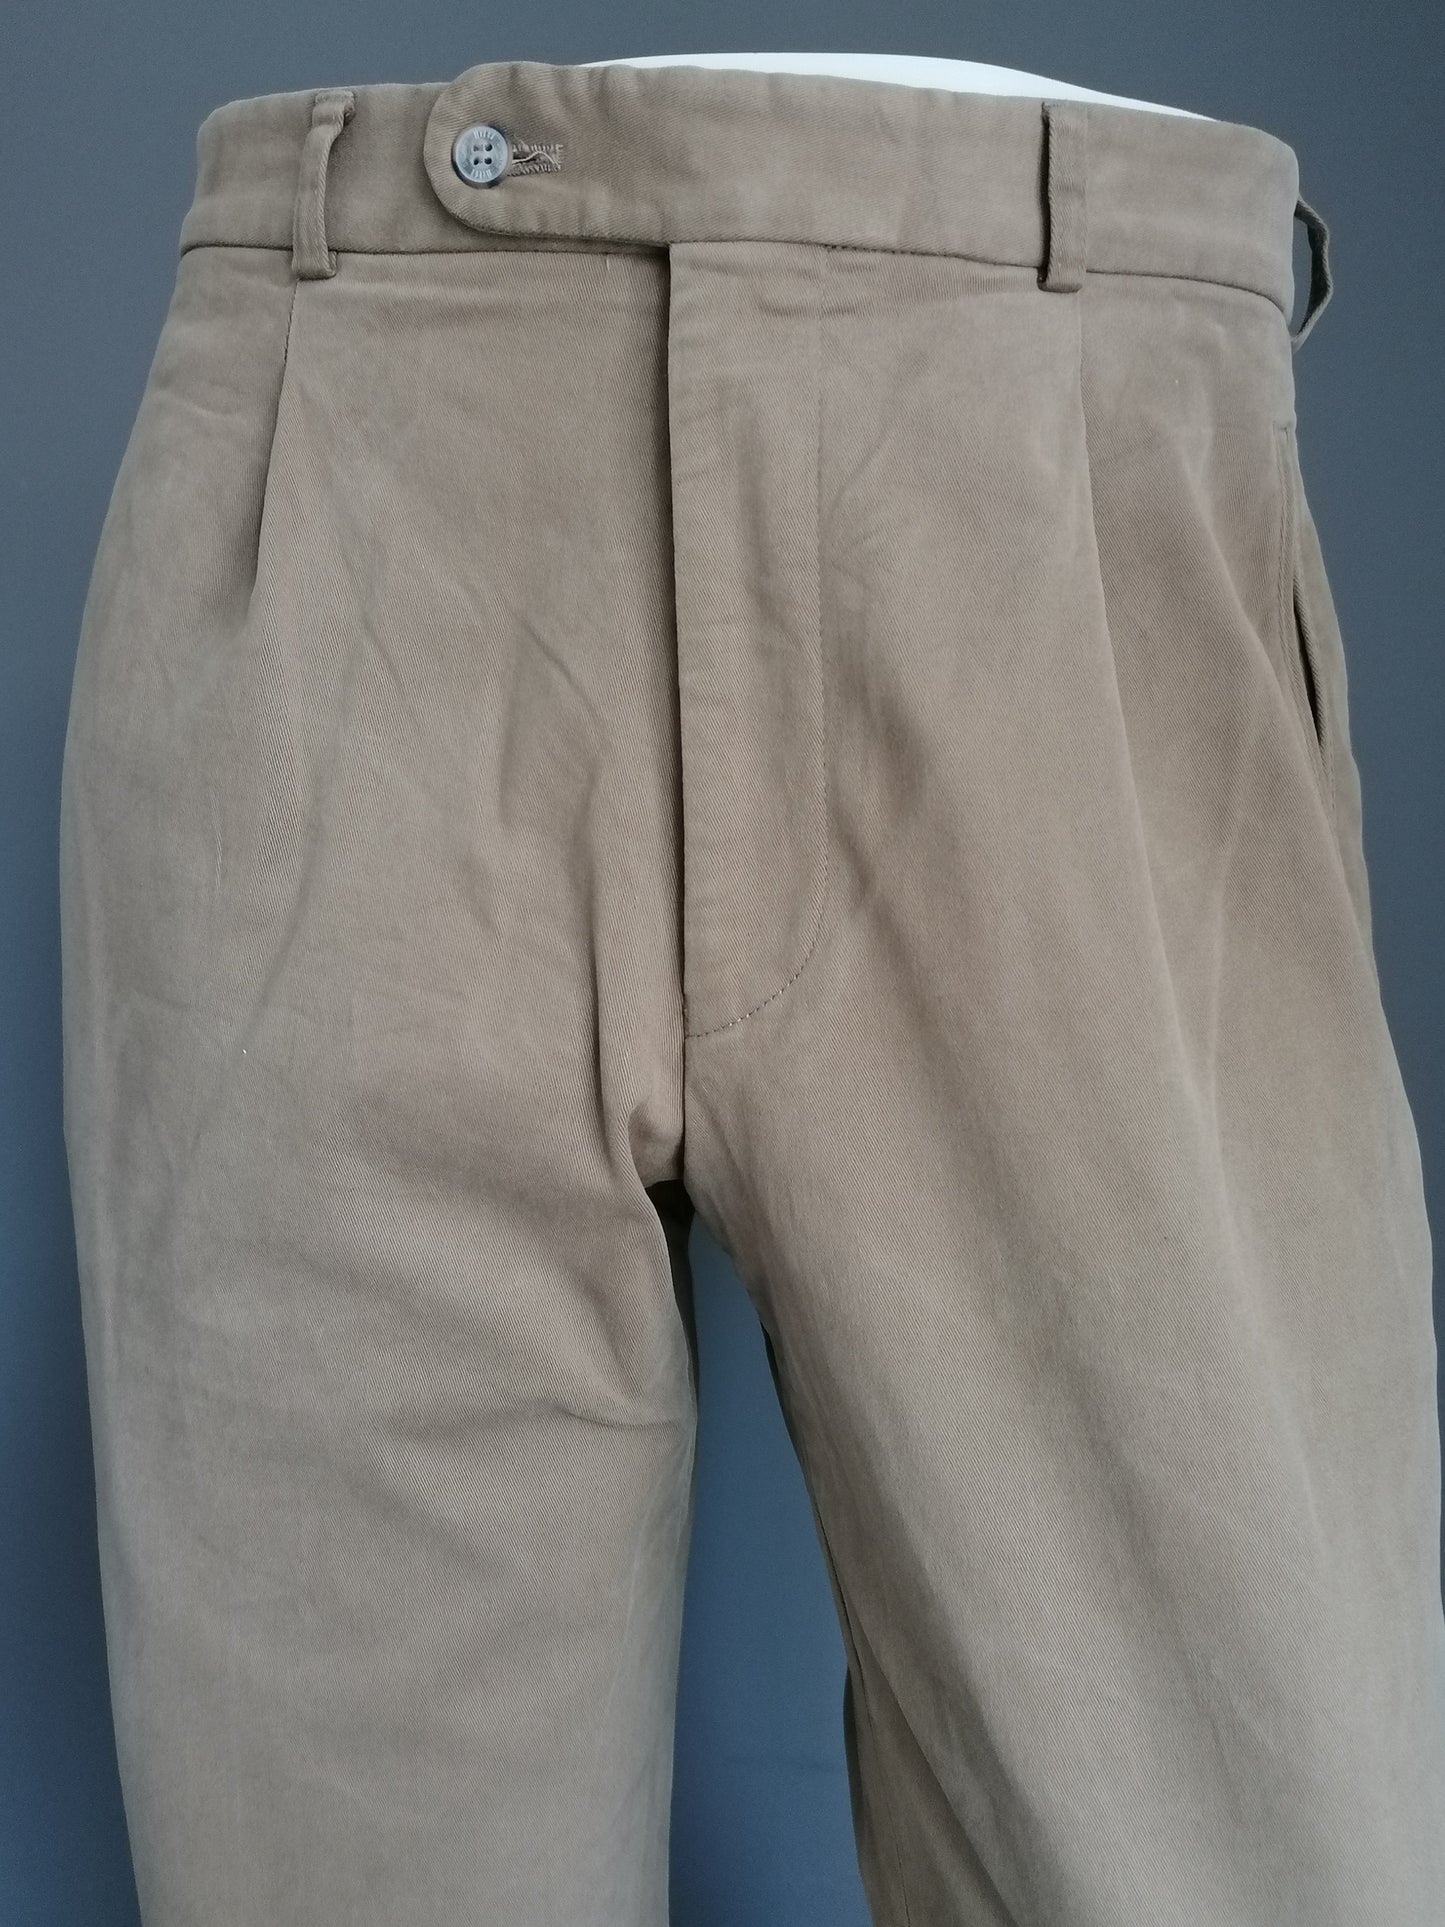 Pantaloni Hiltl. Colorato beige. Taglia 52 / l